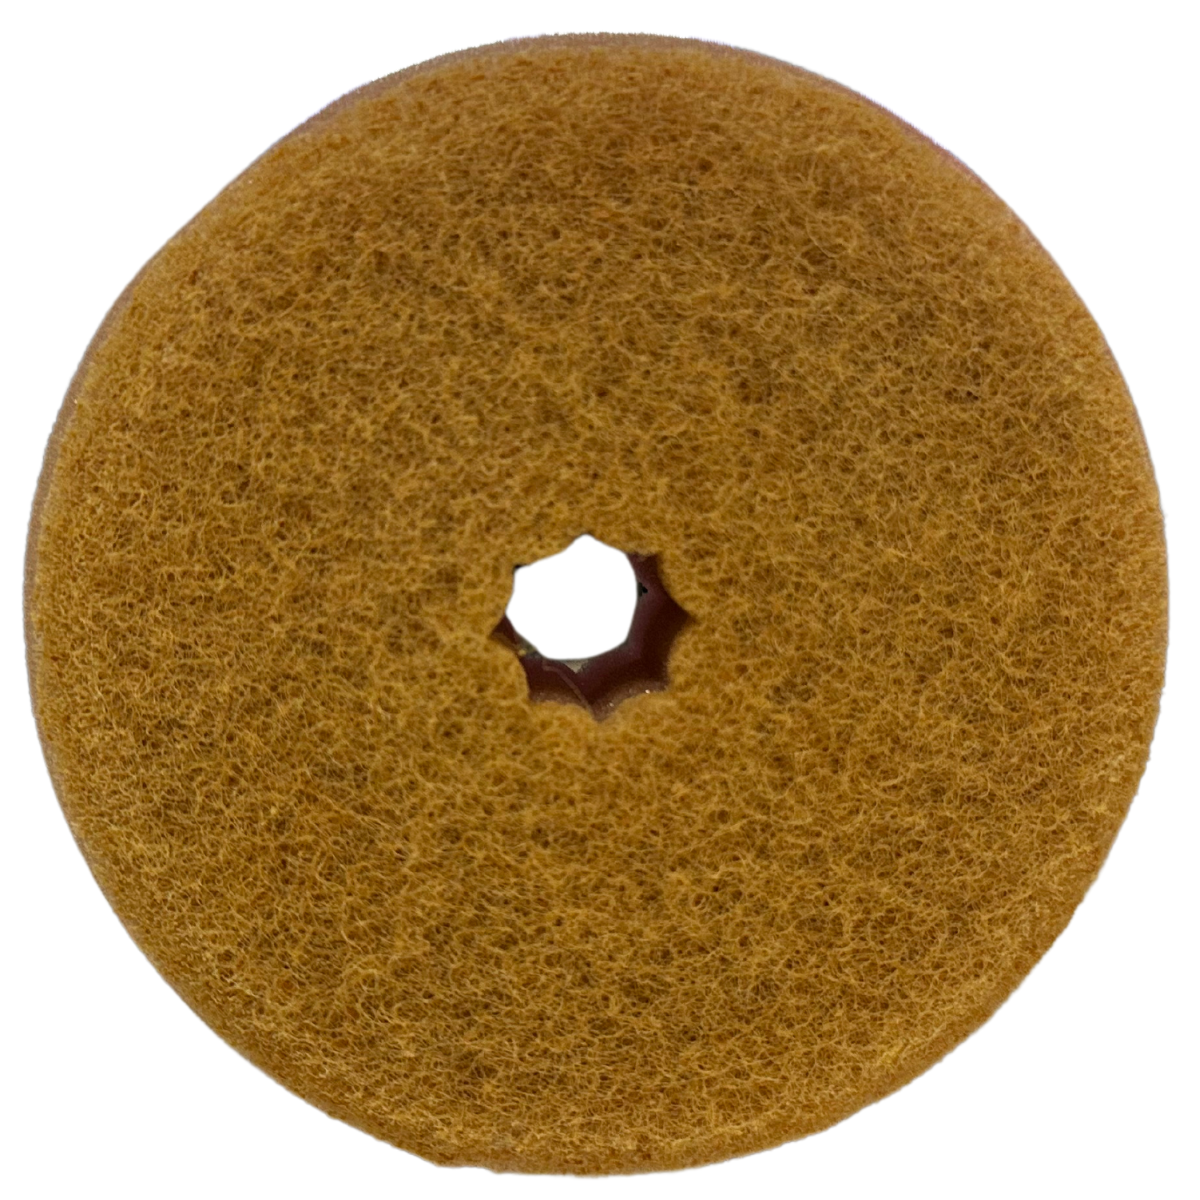 Donut Tack Sponge in Green - 1 pc.